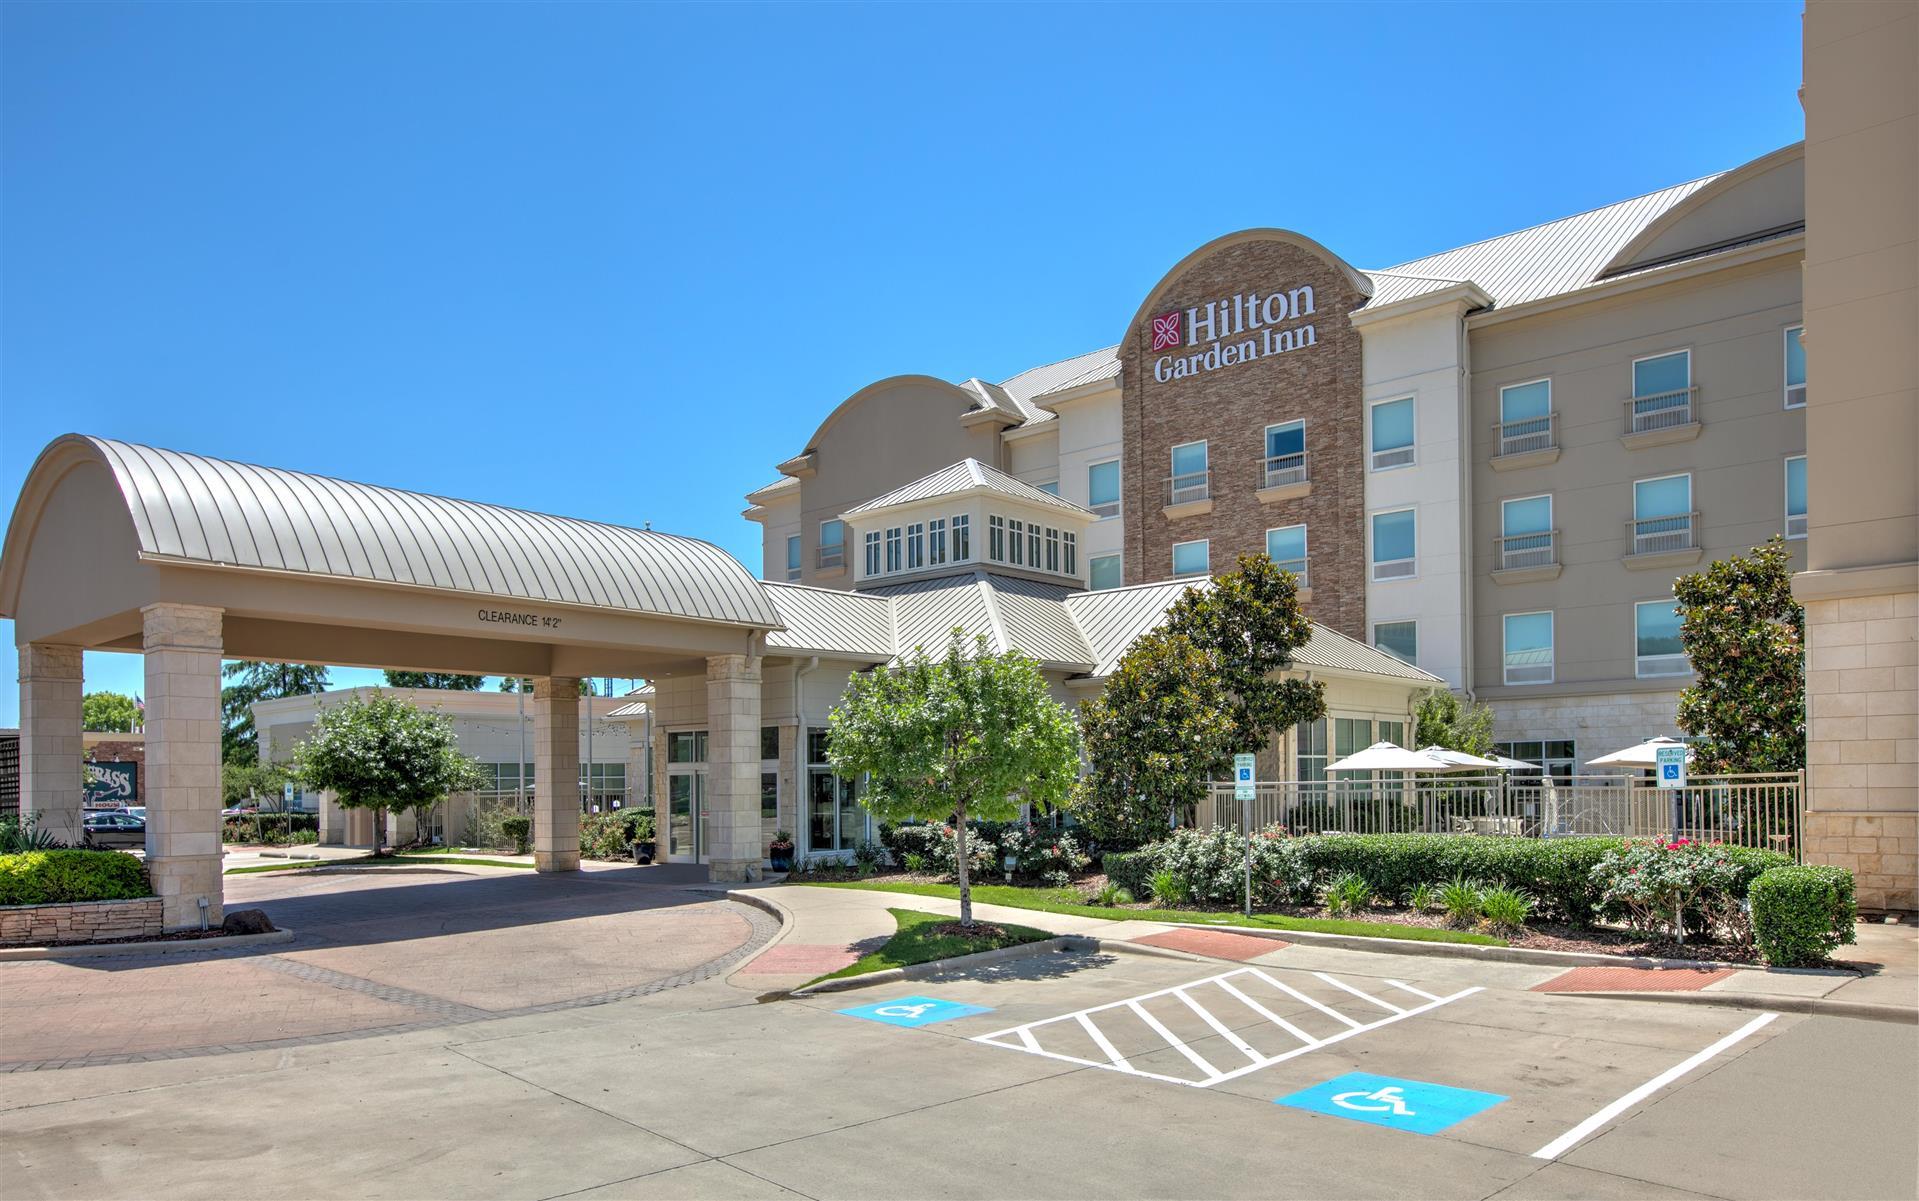 Hilton Garden Inn Dallas/Arlington in Arlington, TX